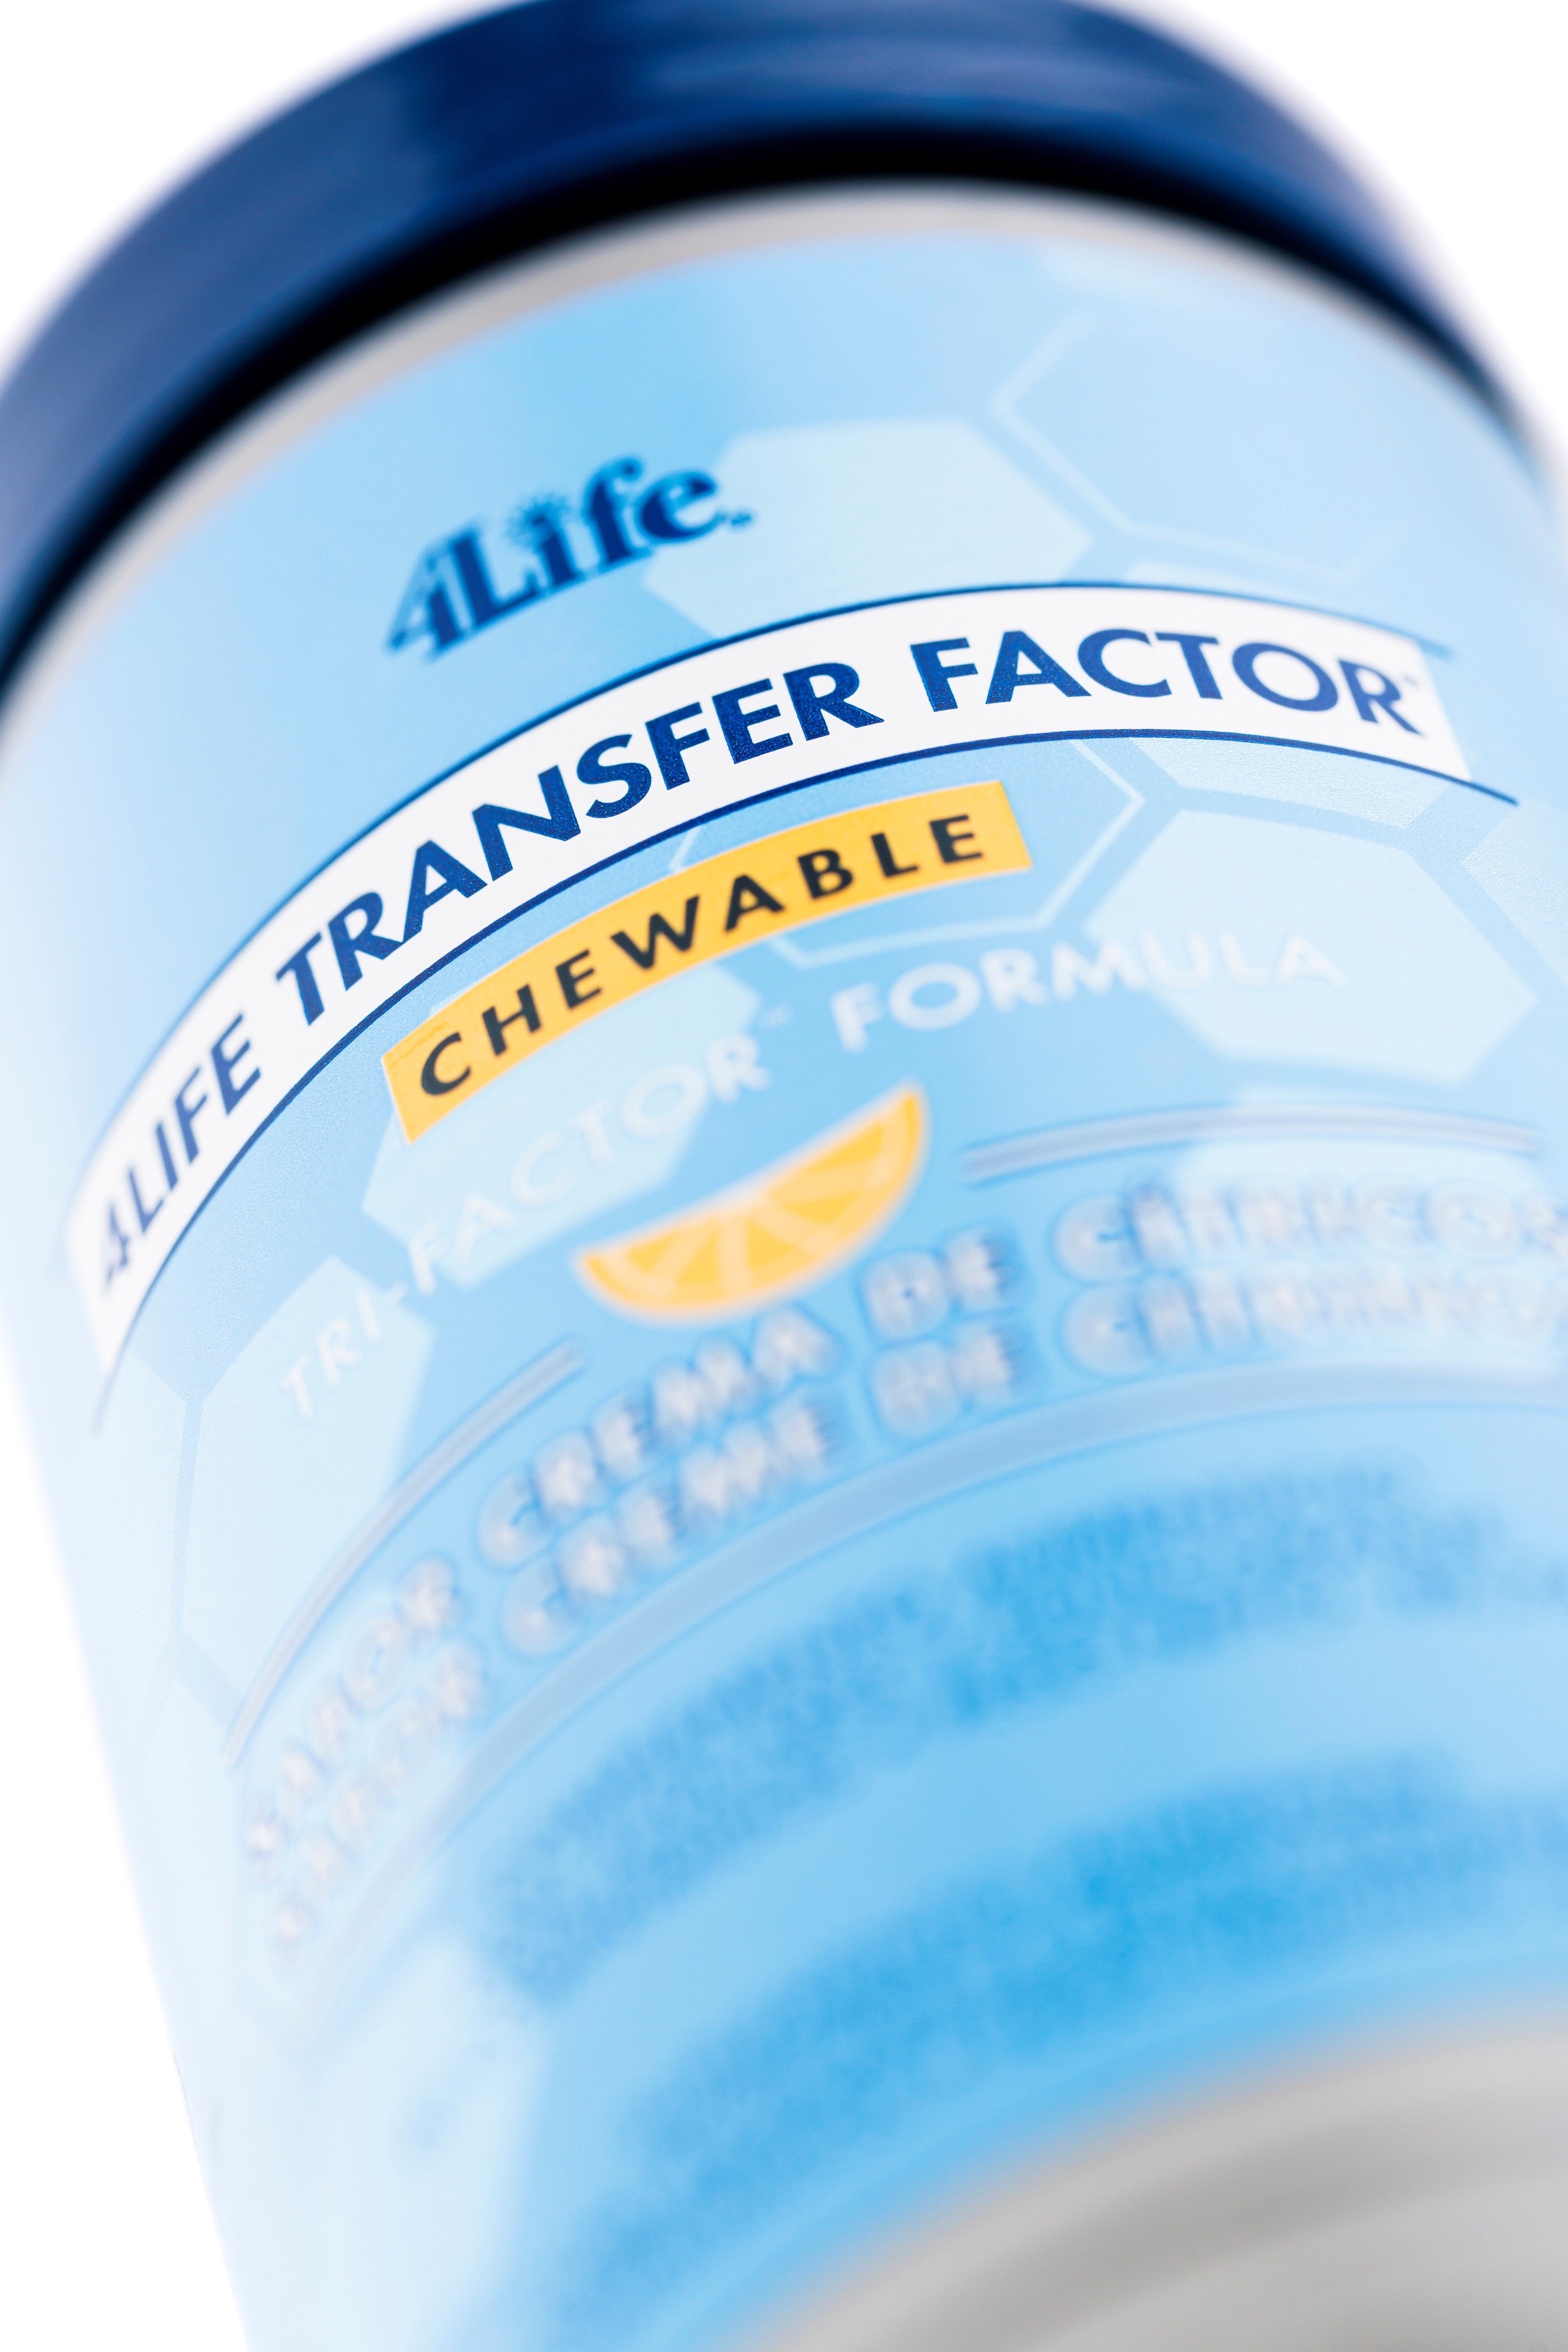 4Life Transfer Fator® Tri-Fator mastigável (90 comprimidos mastigáveis)